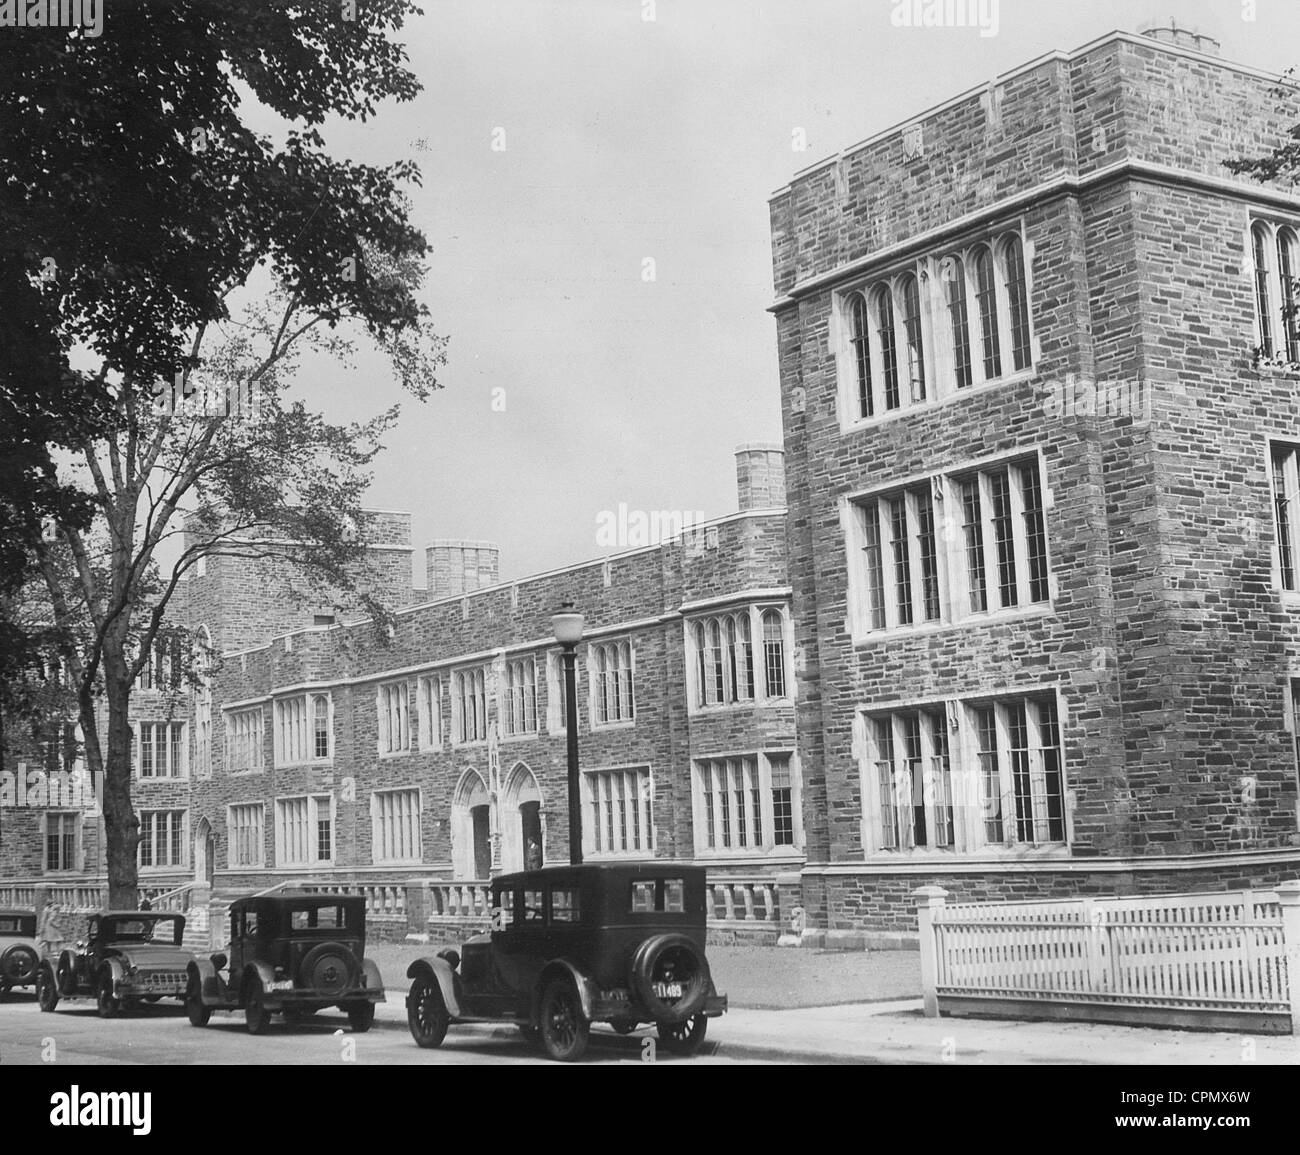 princeton-university-buildings-1926-stock-photo-alamy